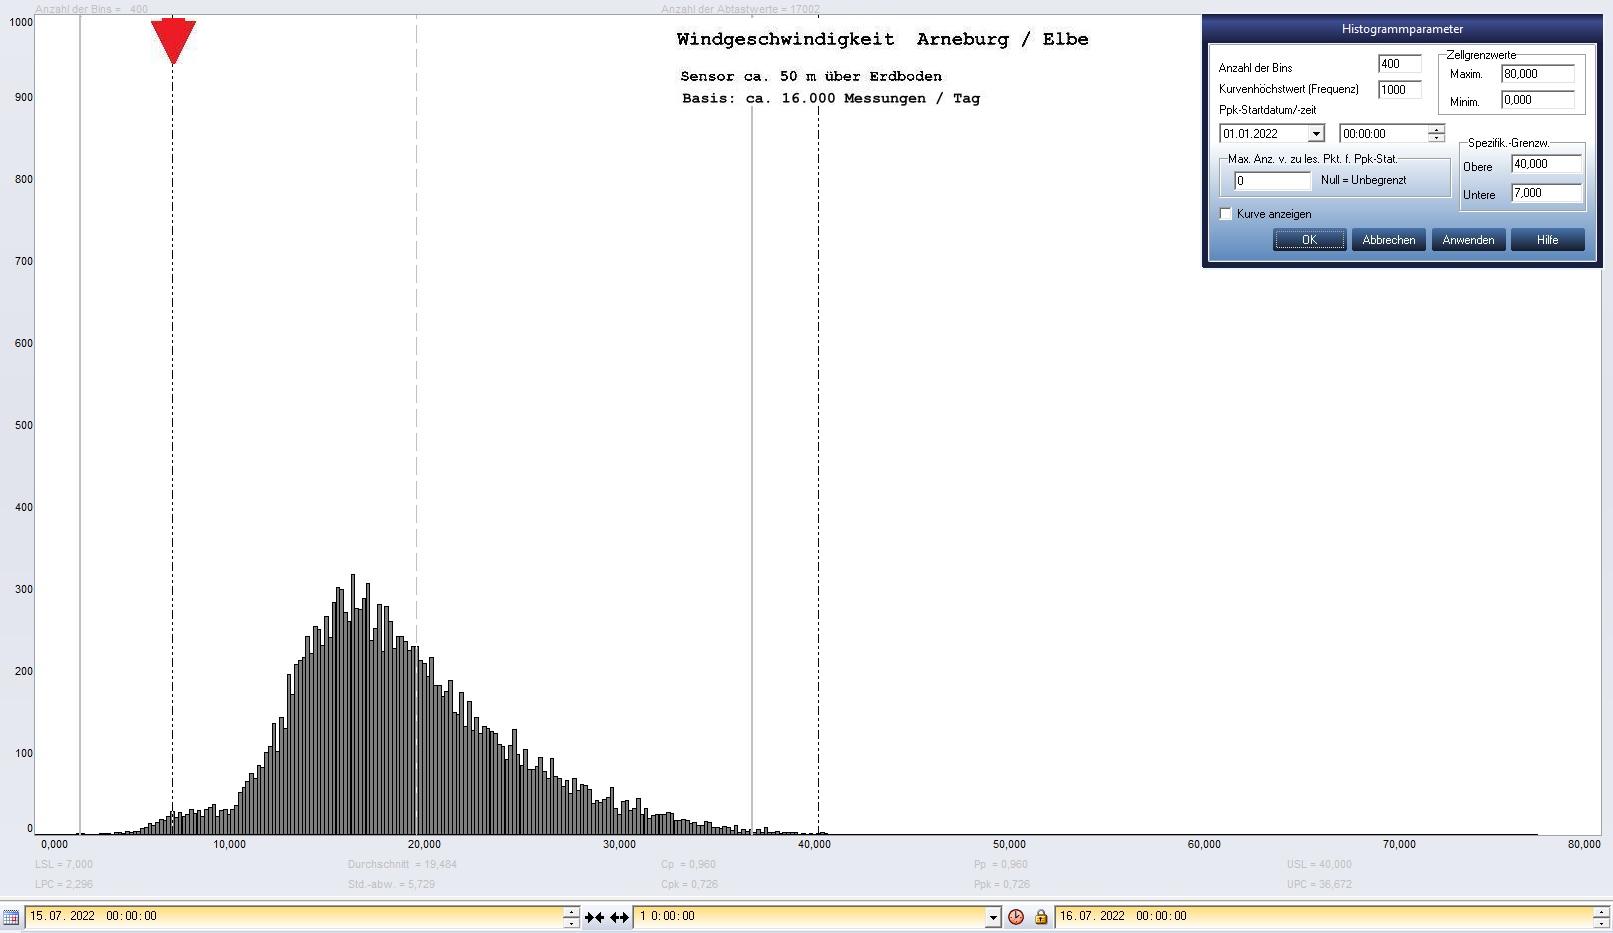 Arneburg Tages-Histogramm Winddaten, 15.07.2022
  Histogramm, Sensor auf Gebude, ca. 50 m ber Erdboden, Basis: 5s-Aufzeichnung